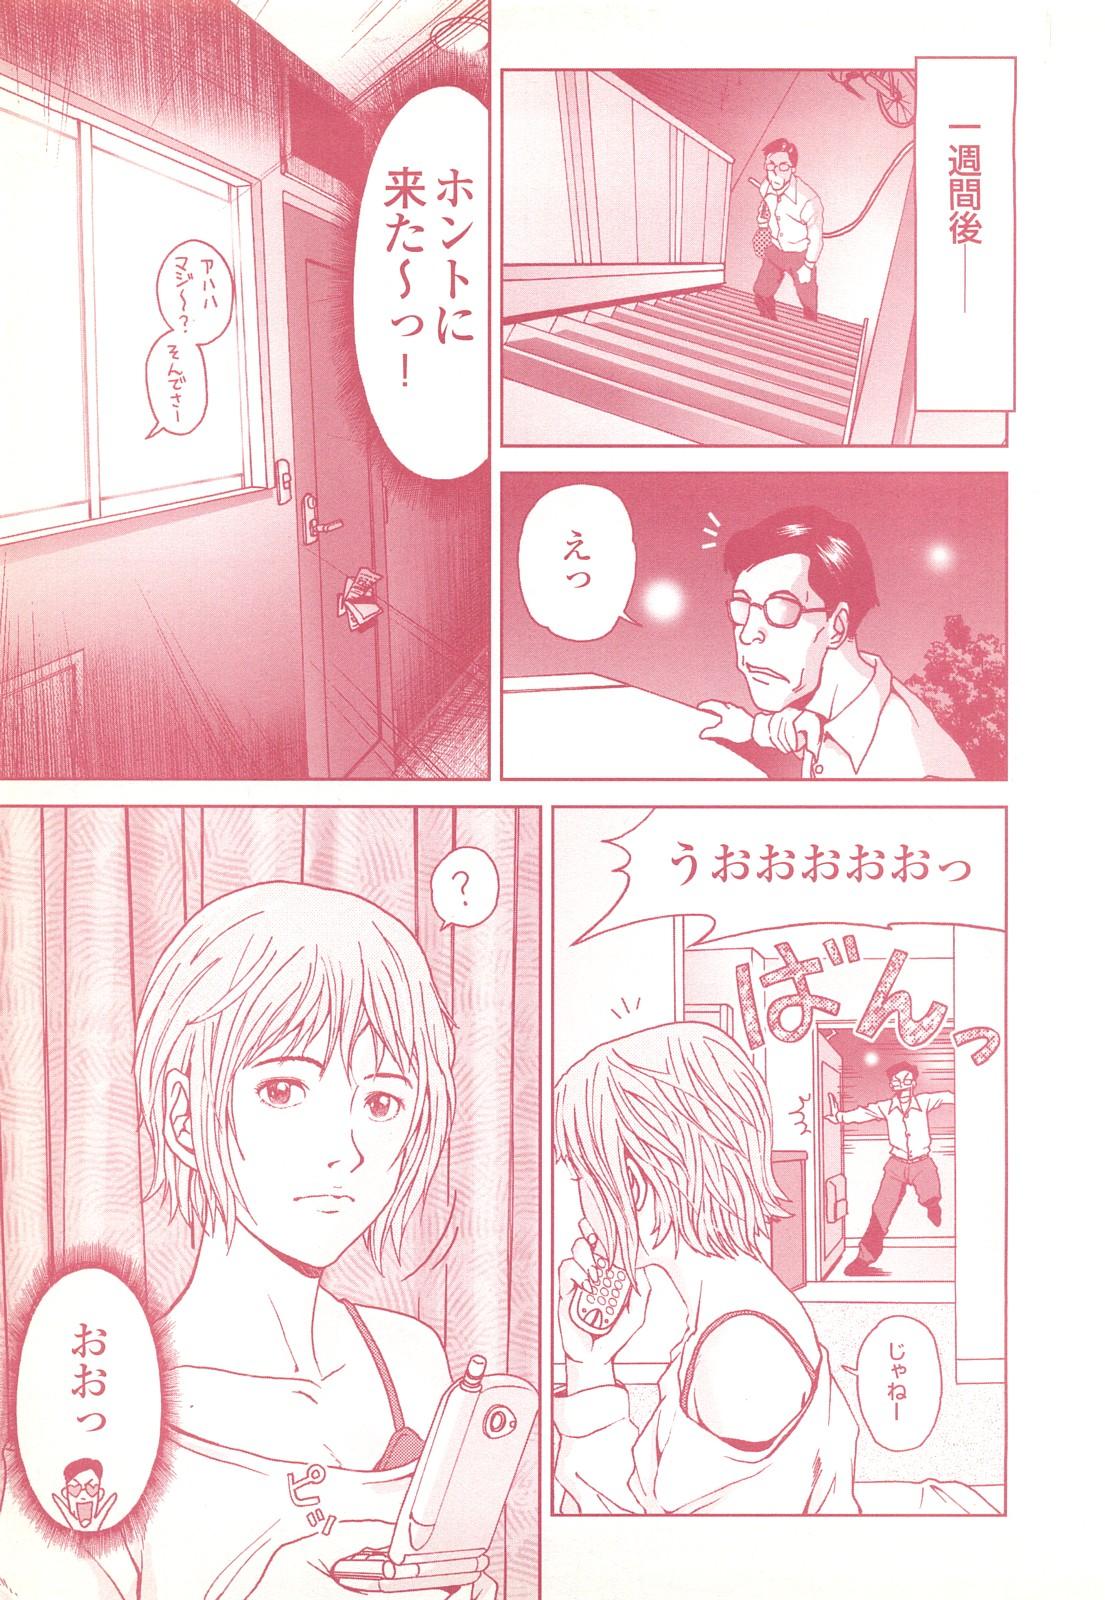 コミック裏モノJAPAN Vol.18 今井のりたつスペシャル号 96